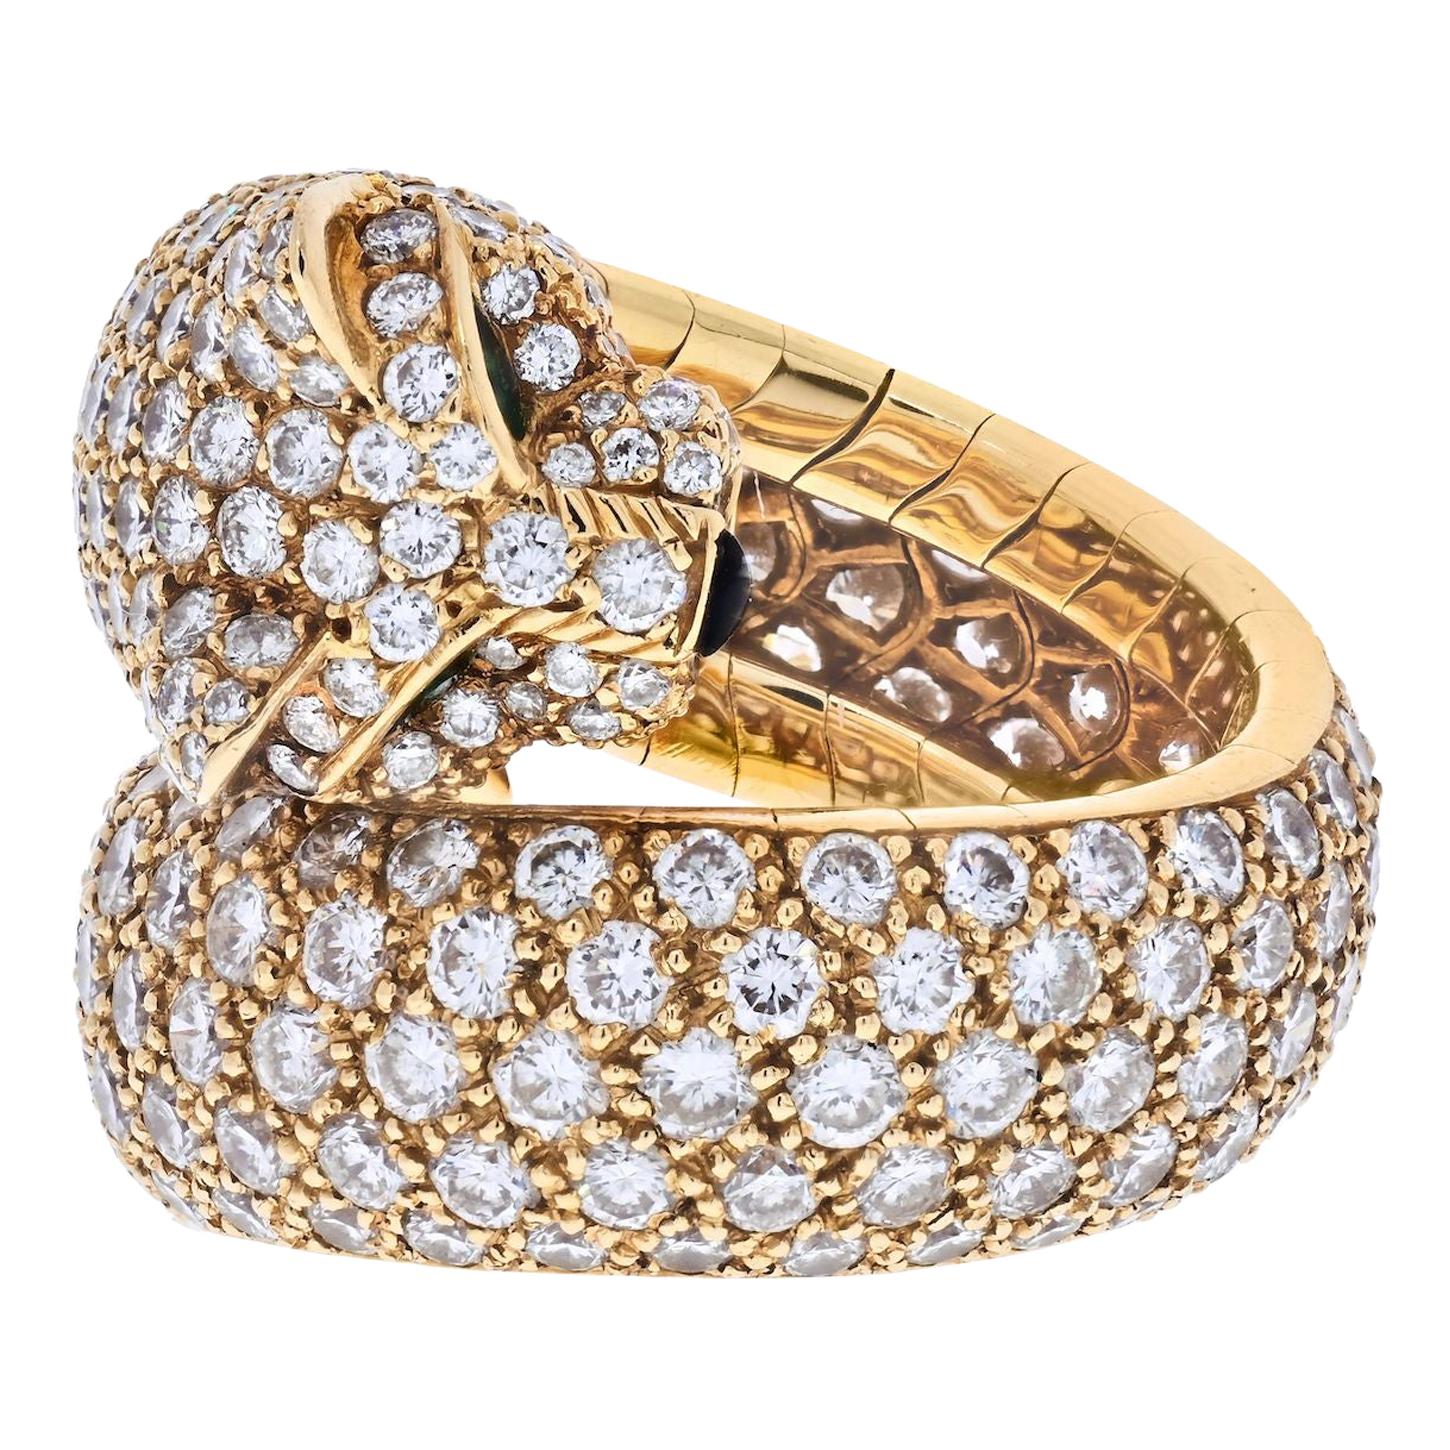 Cartier 18 Karat Yellow Gold Panther Pave Diamond Lakarda Ring